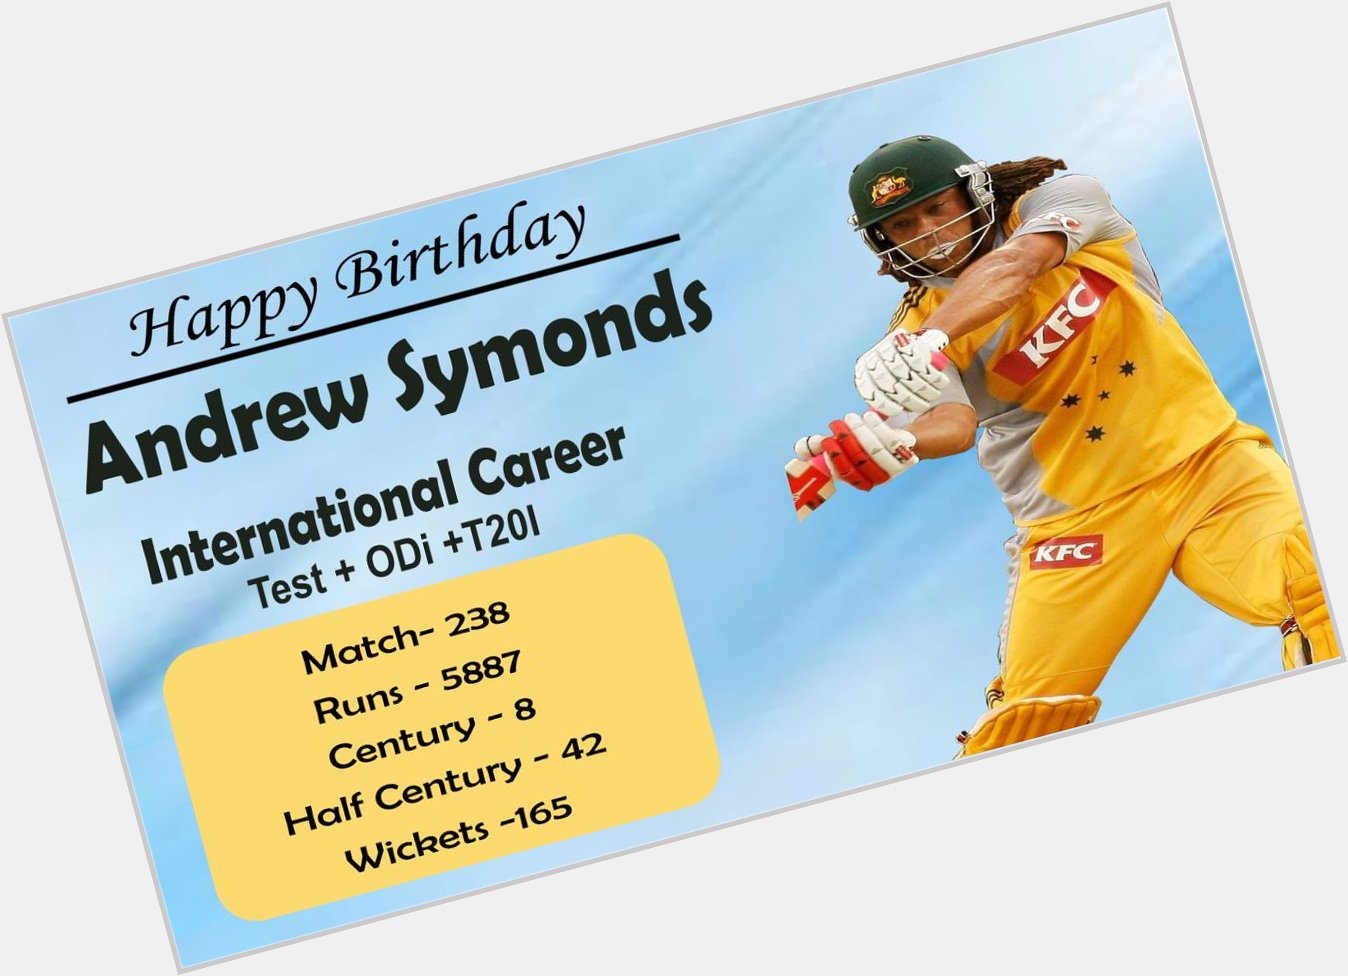 Happy Birthday Andrew Symonds.     